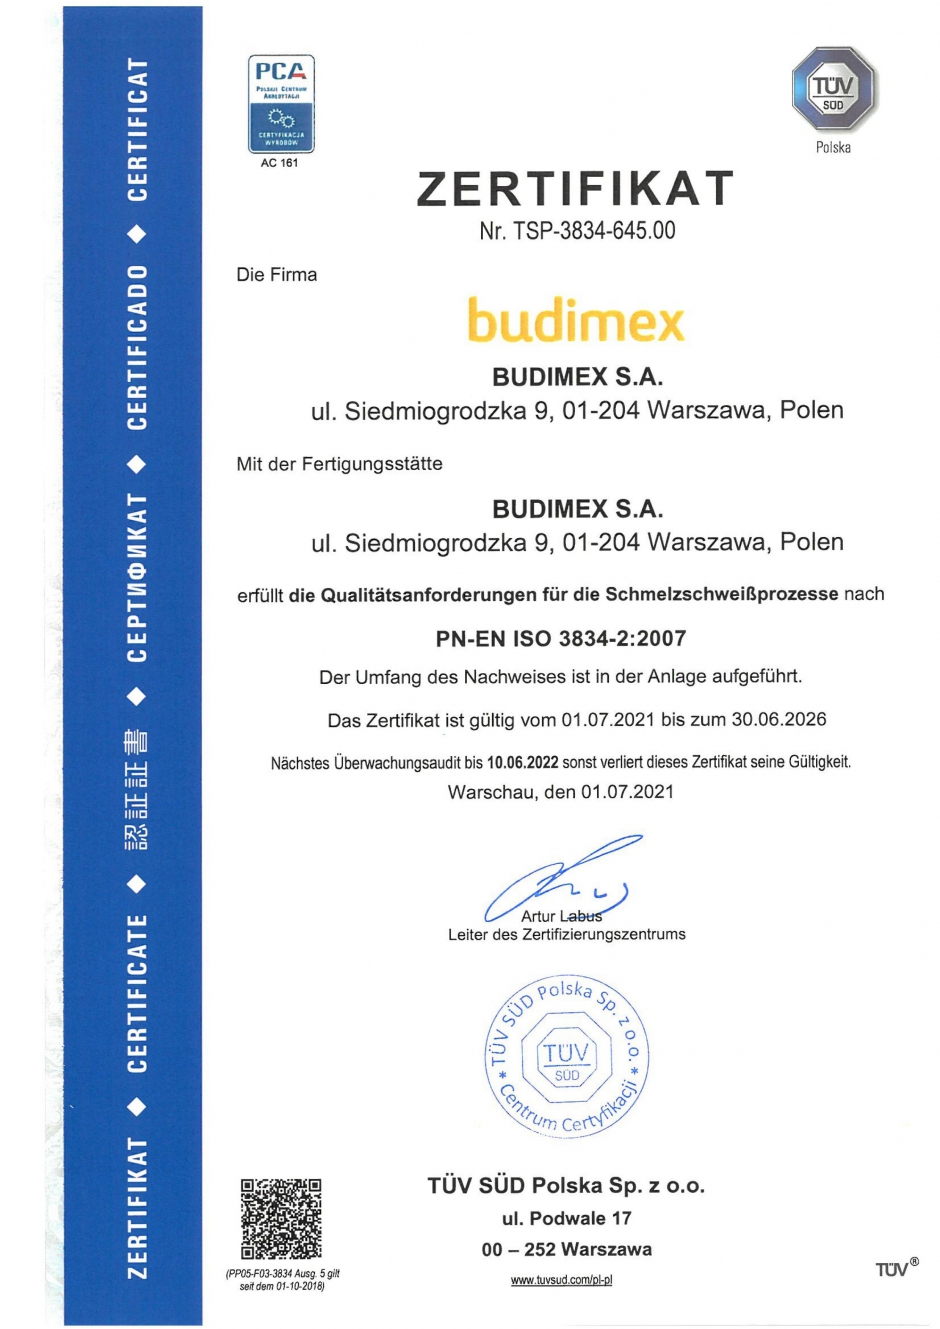 PN-EN ISO 3834